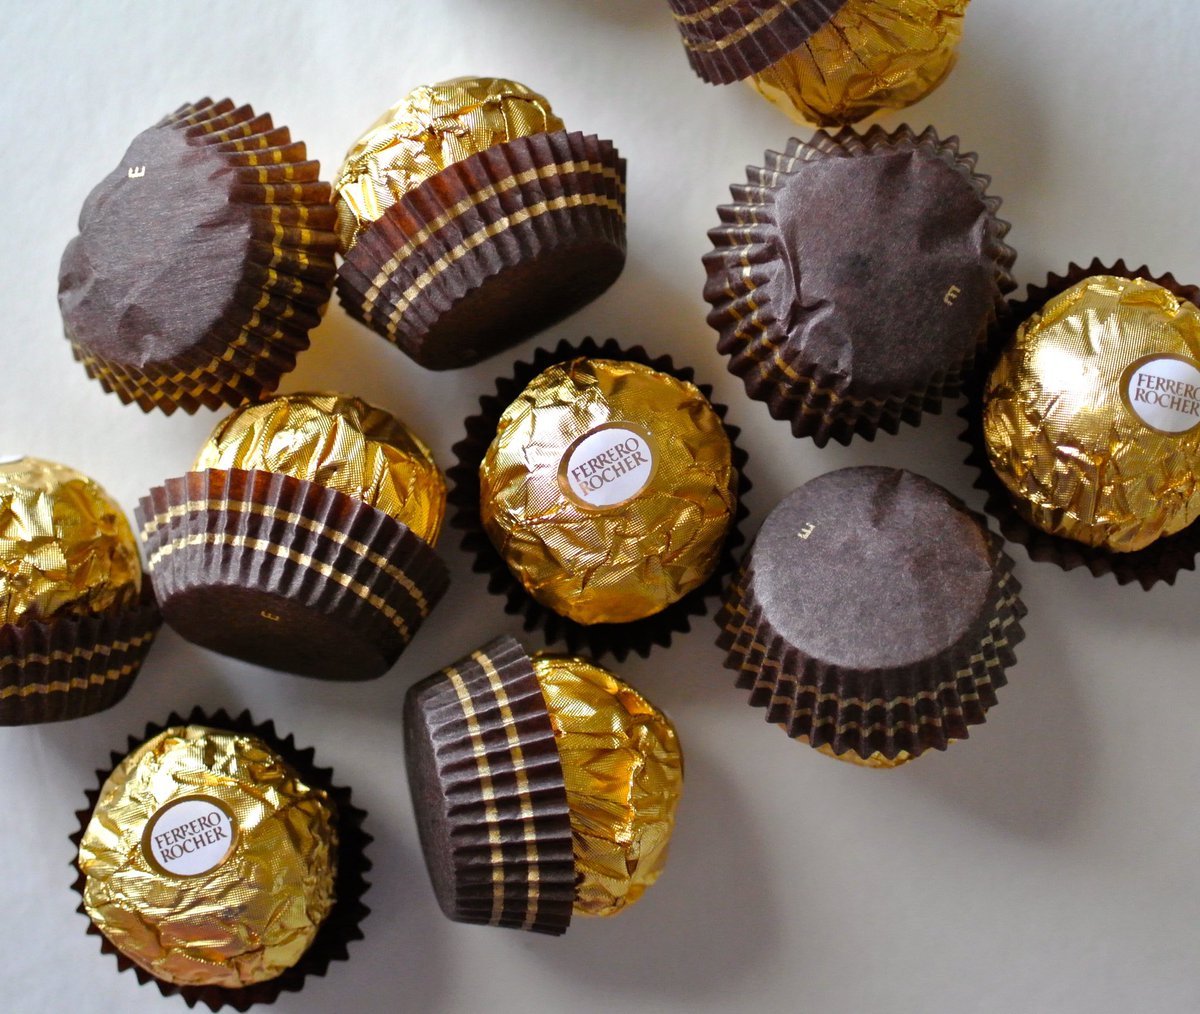 Шоколадные конфеты Ферреро Роше